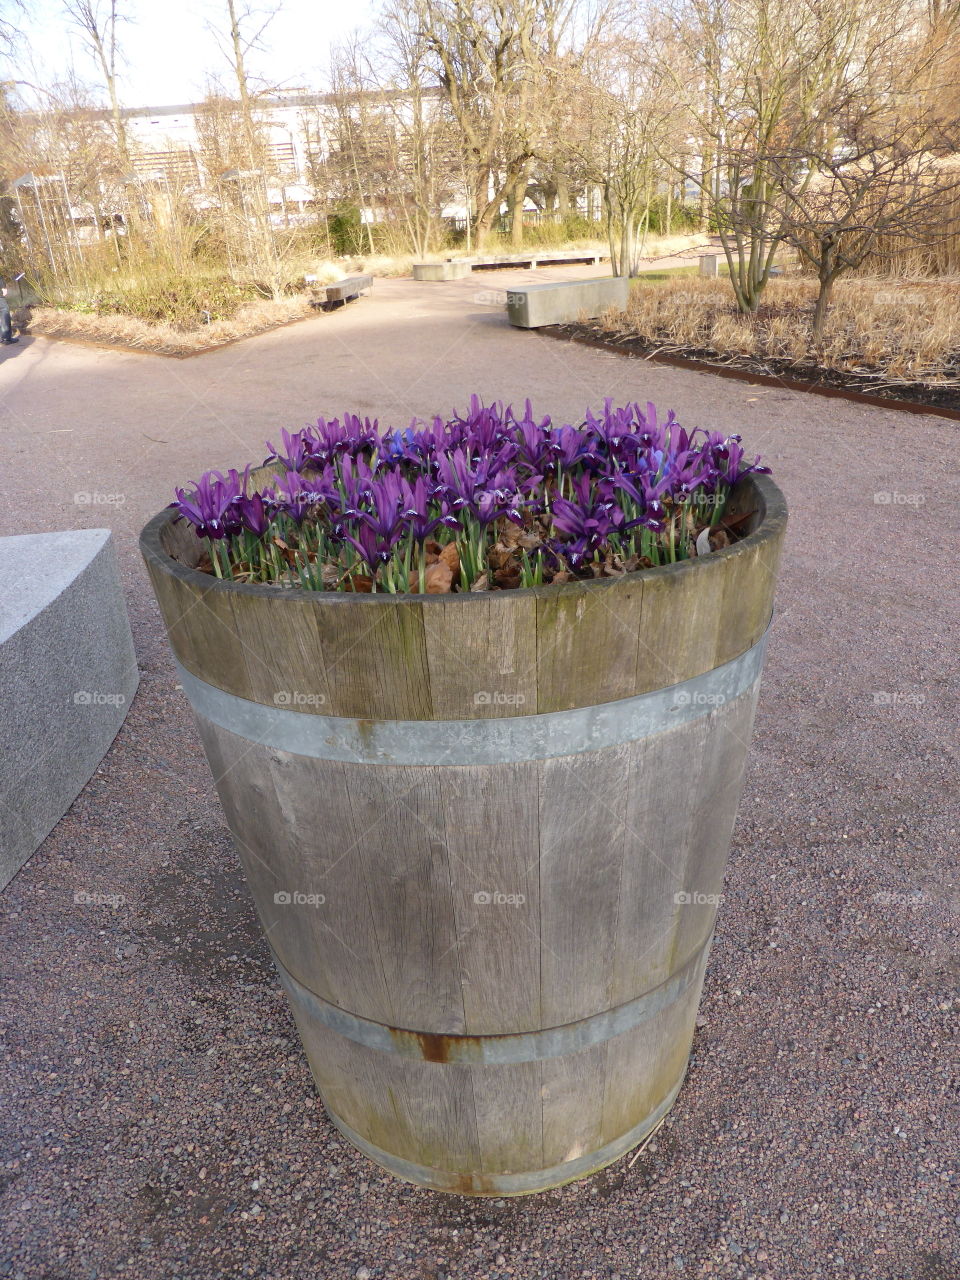 iris in a pot